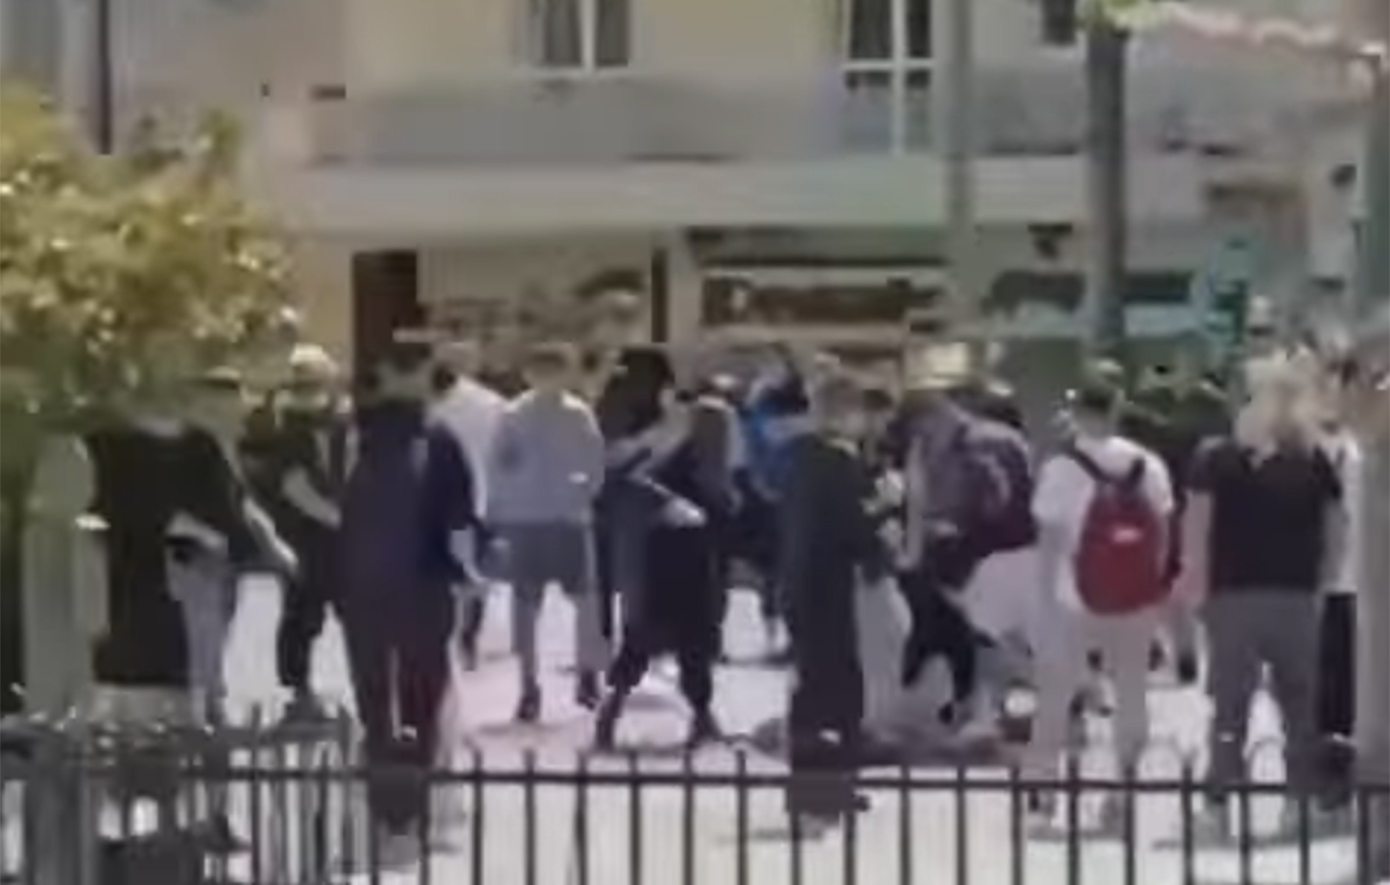 Σοκαριστικό βίντεο από την άγρια συμπλοκή ανηλίκων στην Κέρκυρα – Πέφτουν στο έδαφος και δεκάδες άτομα παρακολουθούν